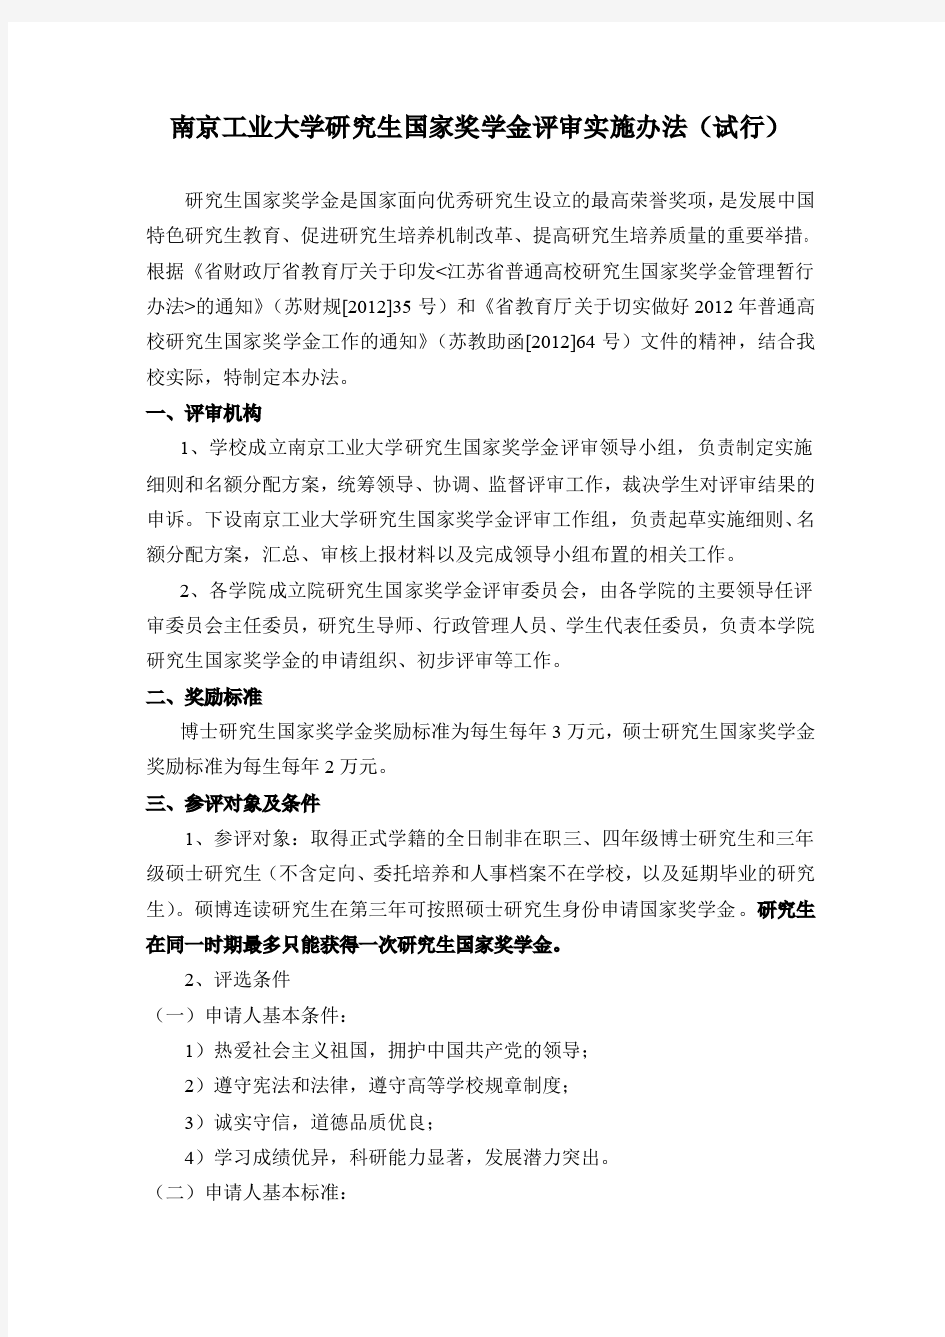 南京工业大学研究生国家奖学金评审实施办法(试行)